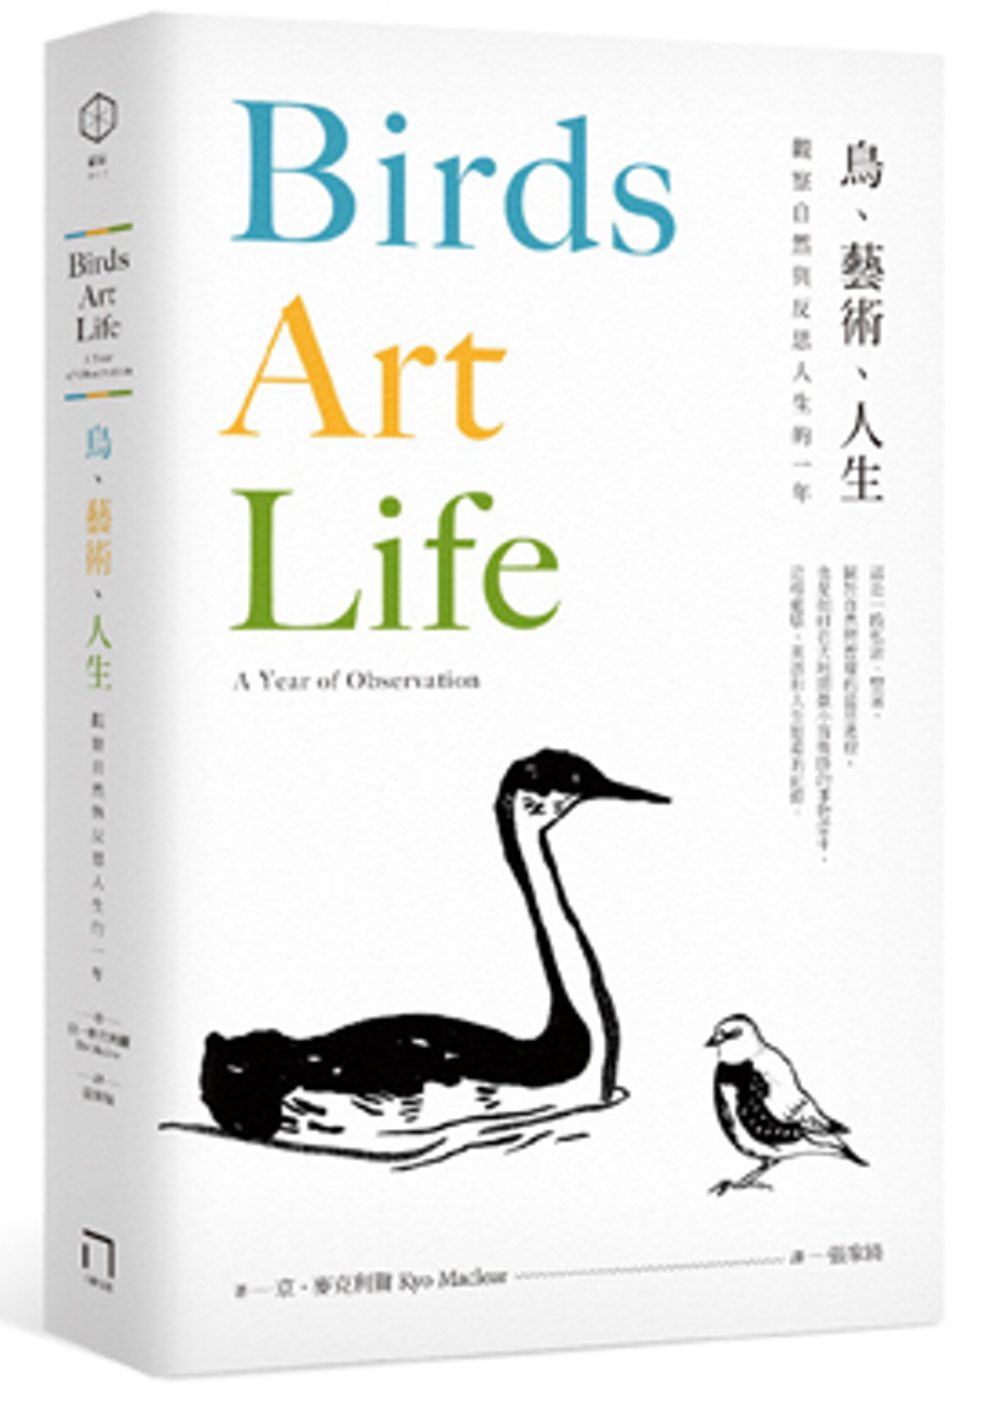 鳥、藝術、人生：觀察自然與反思人生的一年